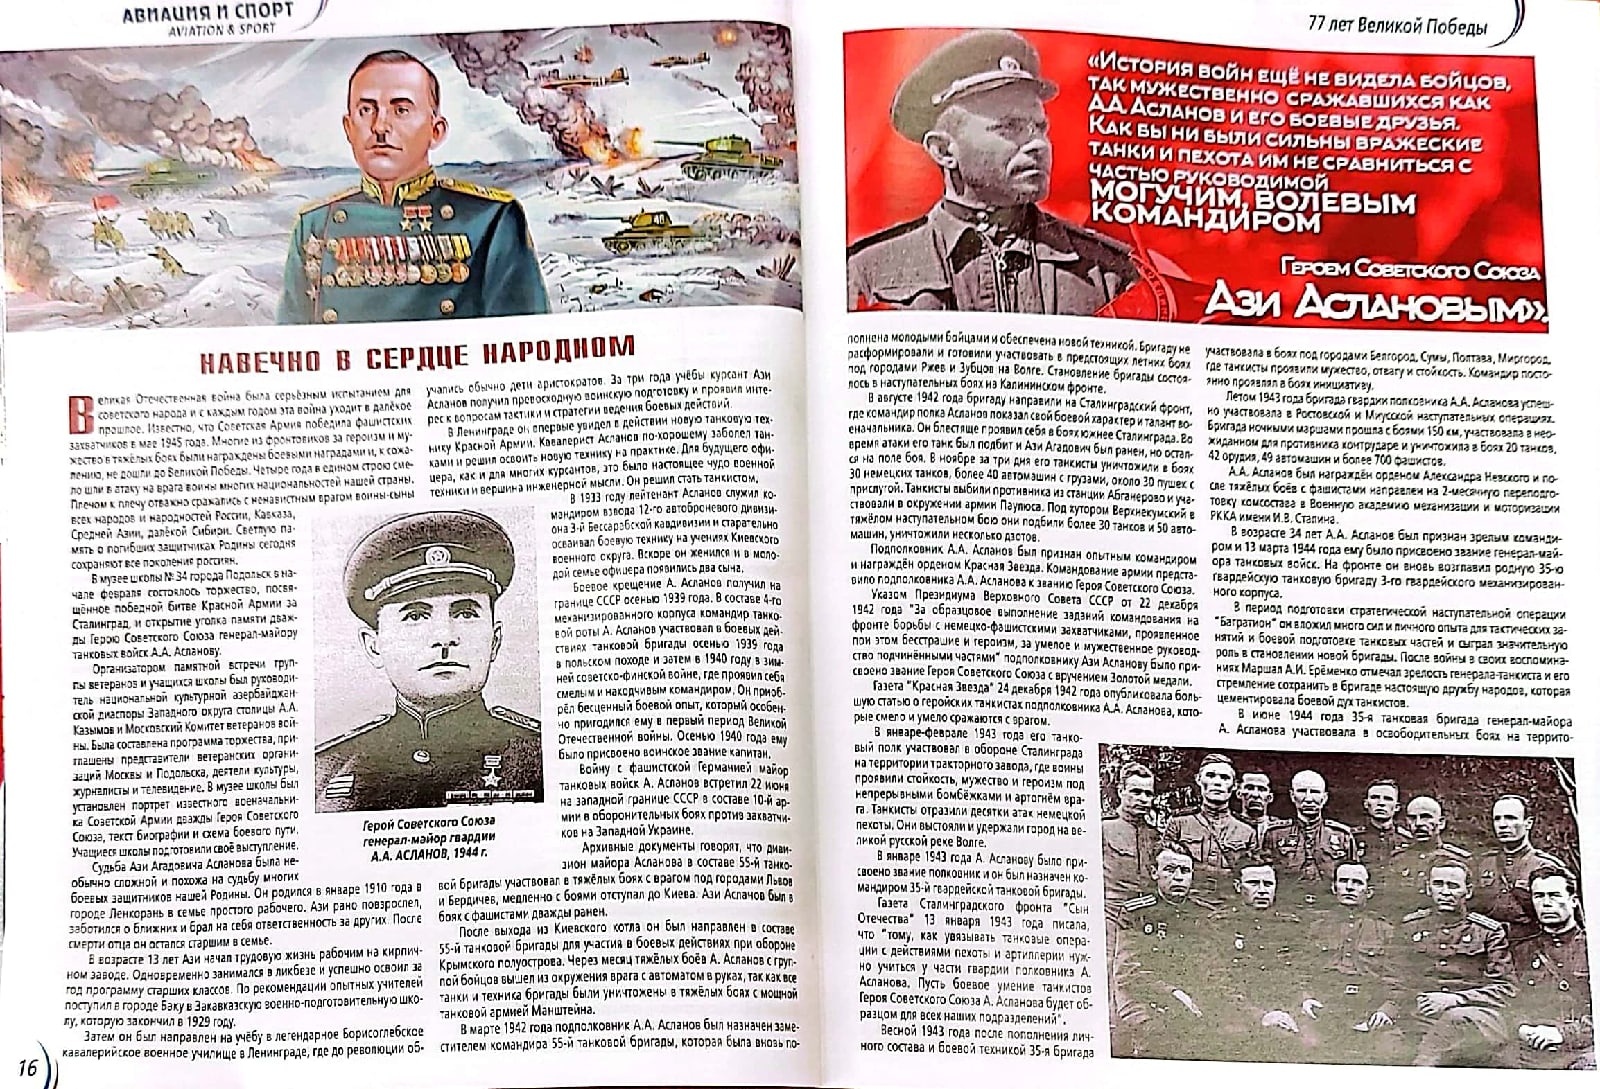 Обширную статью «Навечно в сердце народном» посвятили генерал-майору гвардии танковых войск, дважды Герою Советского Союза Ази Асланову